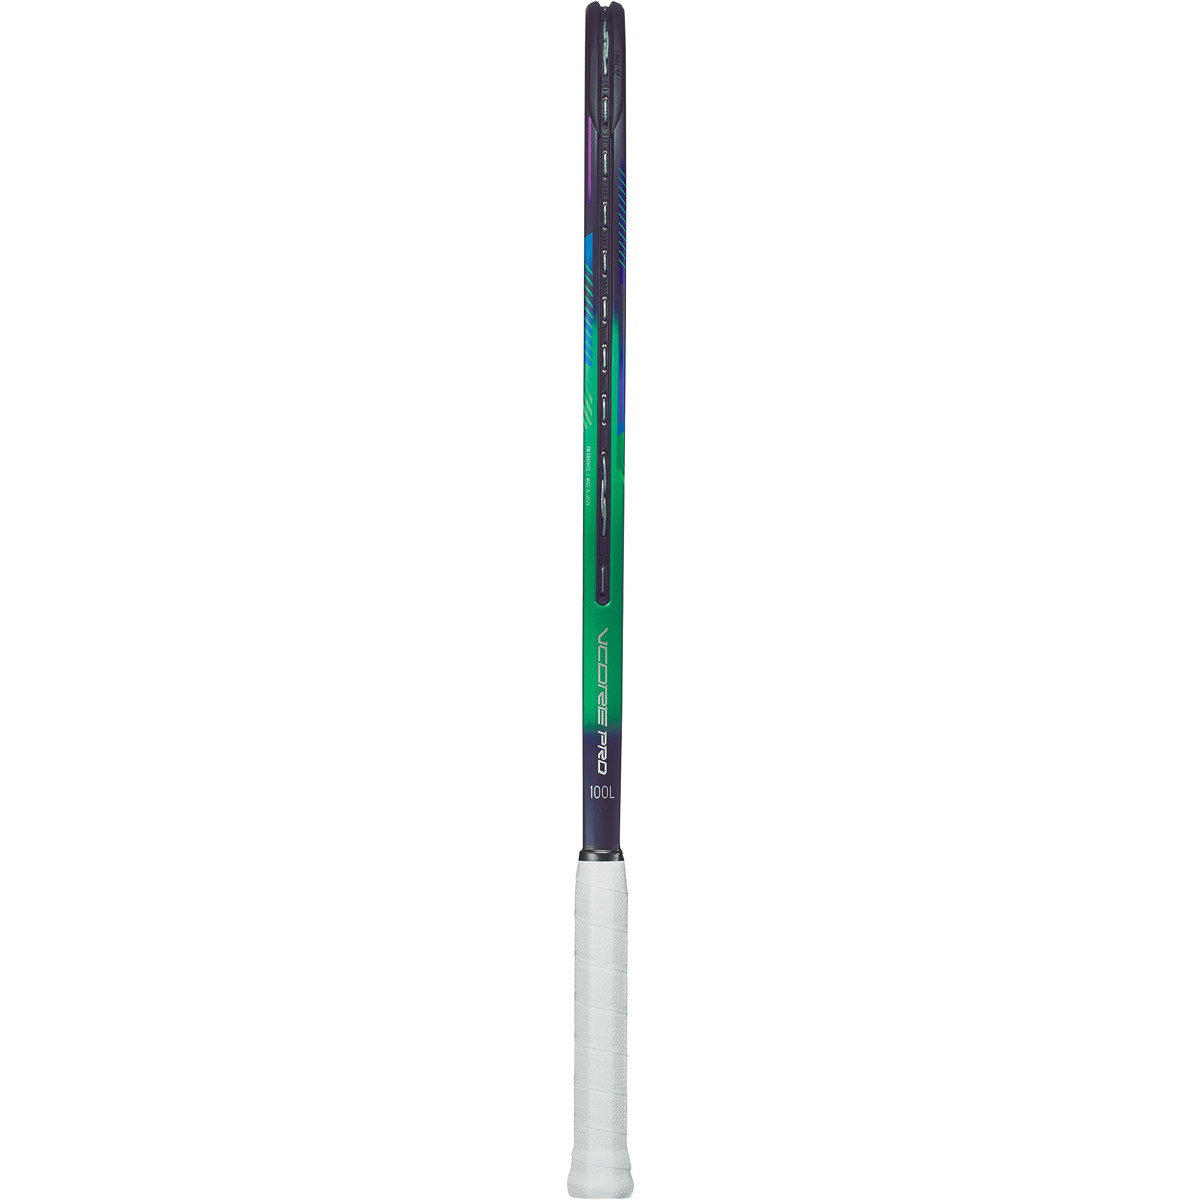 YONEX VCORE PRO 100L 2021 RACQUET (280GR) - YONEX - Adult Racquets 